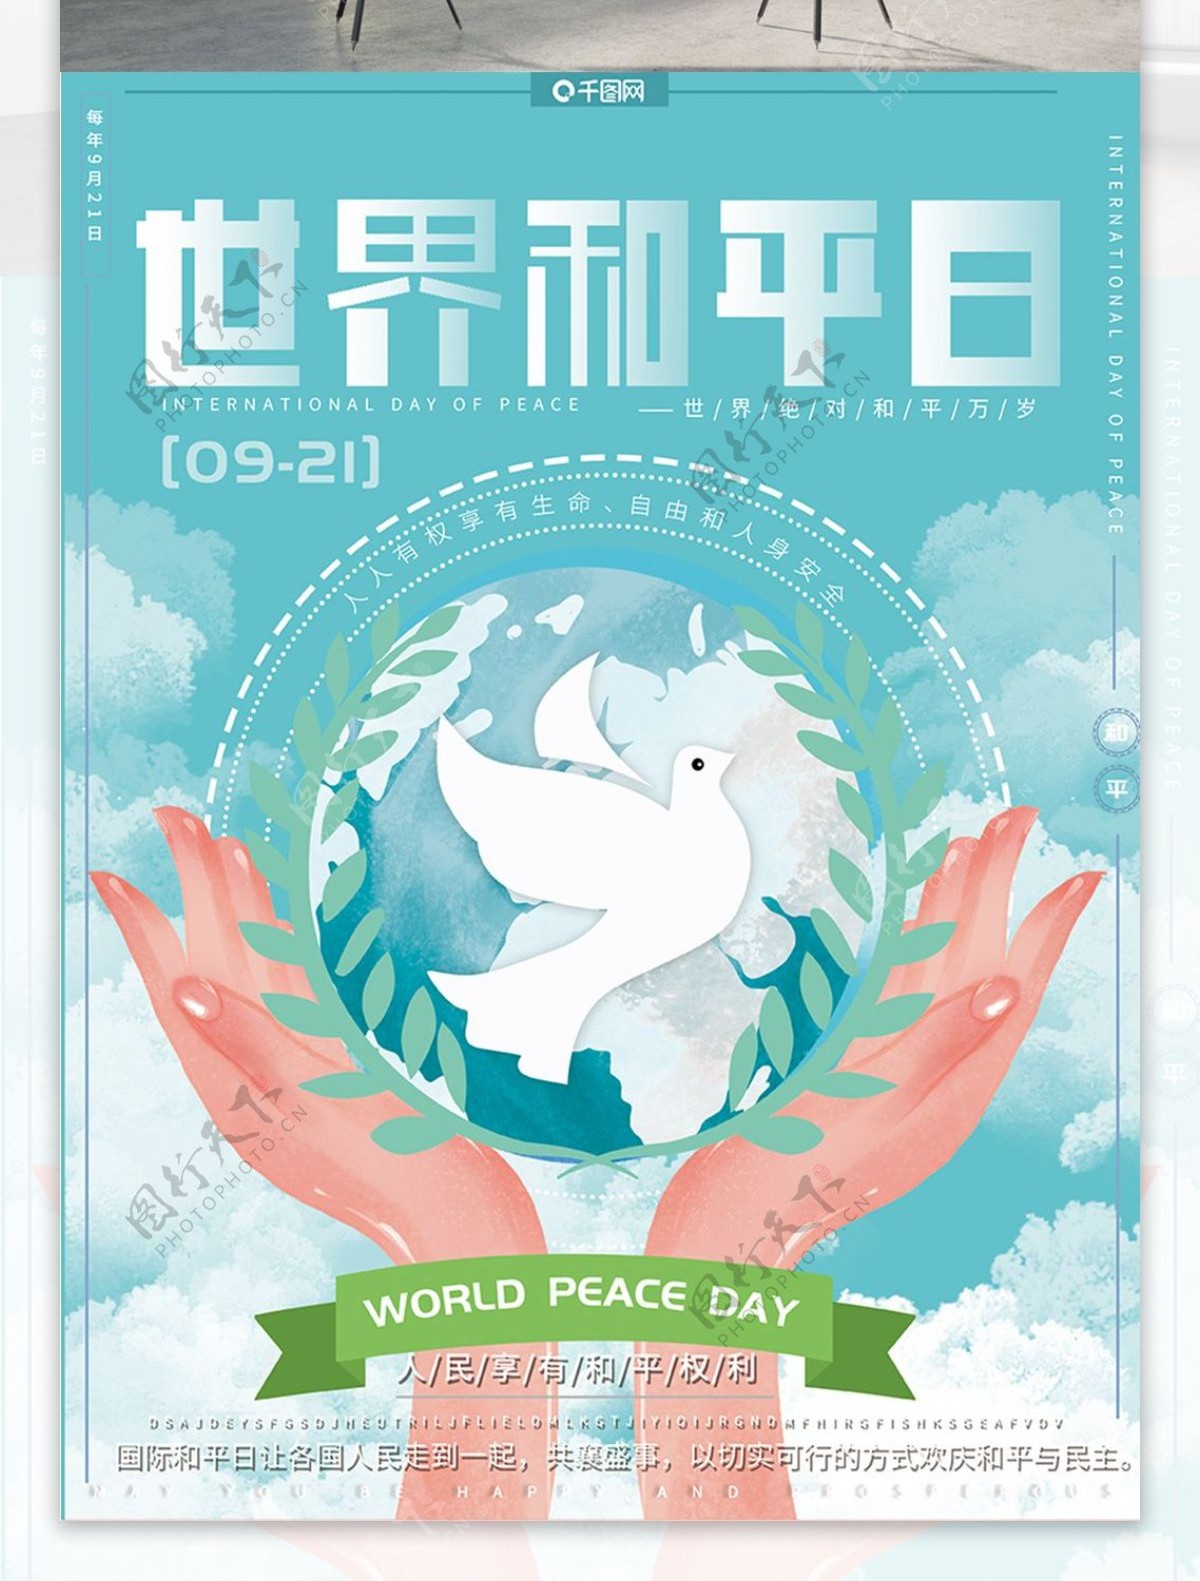 原创手绘风小清新简约世界和平公益宣传海报